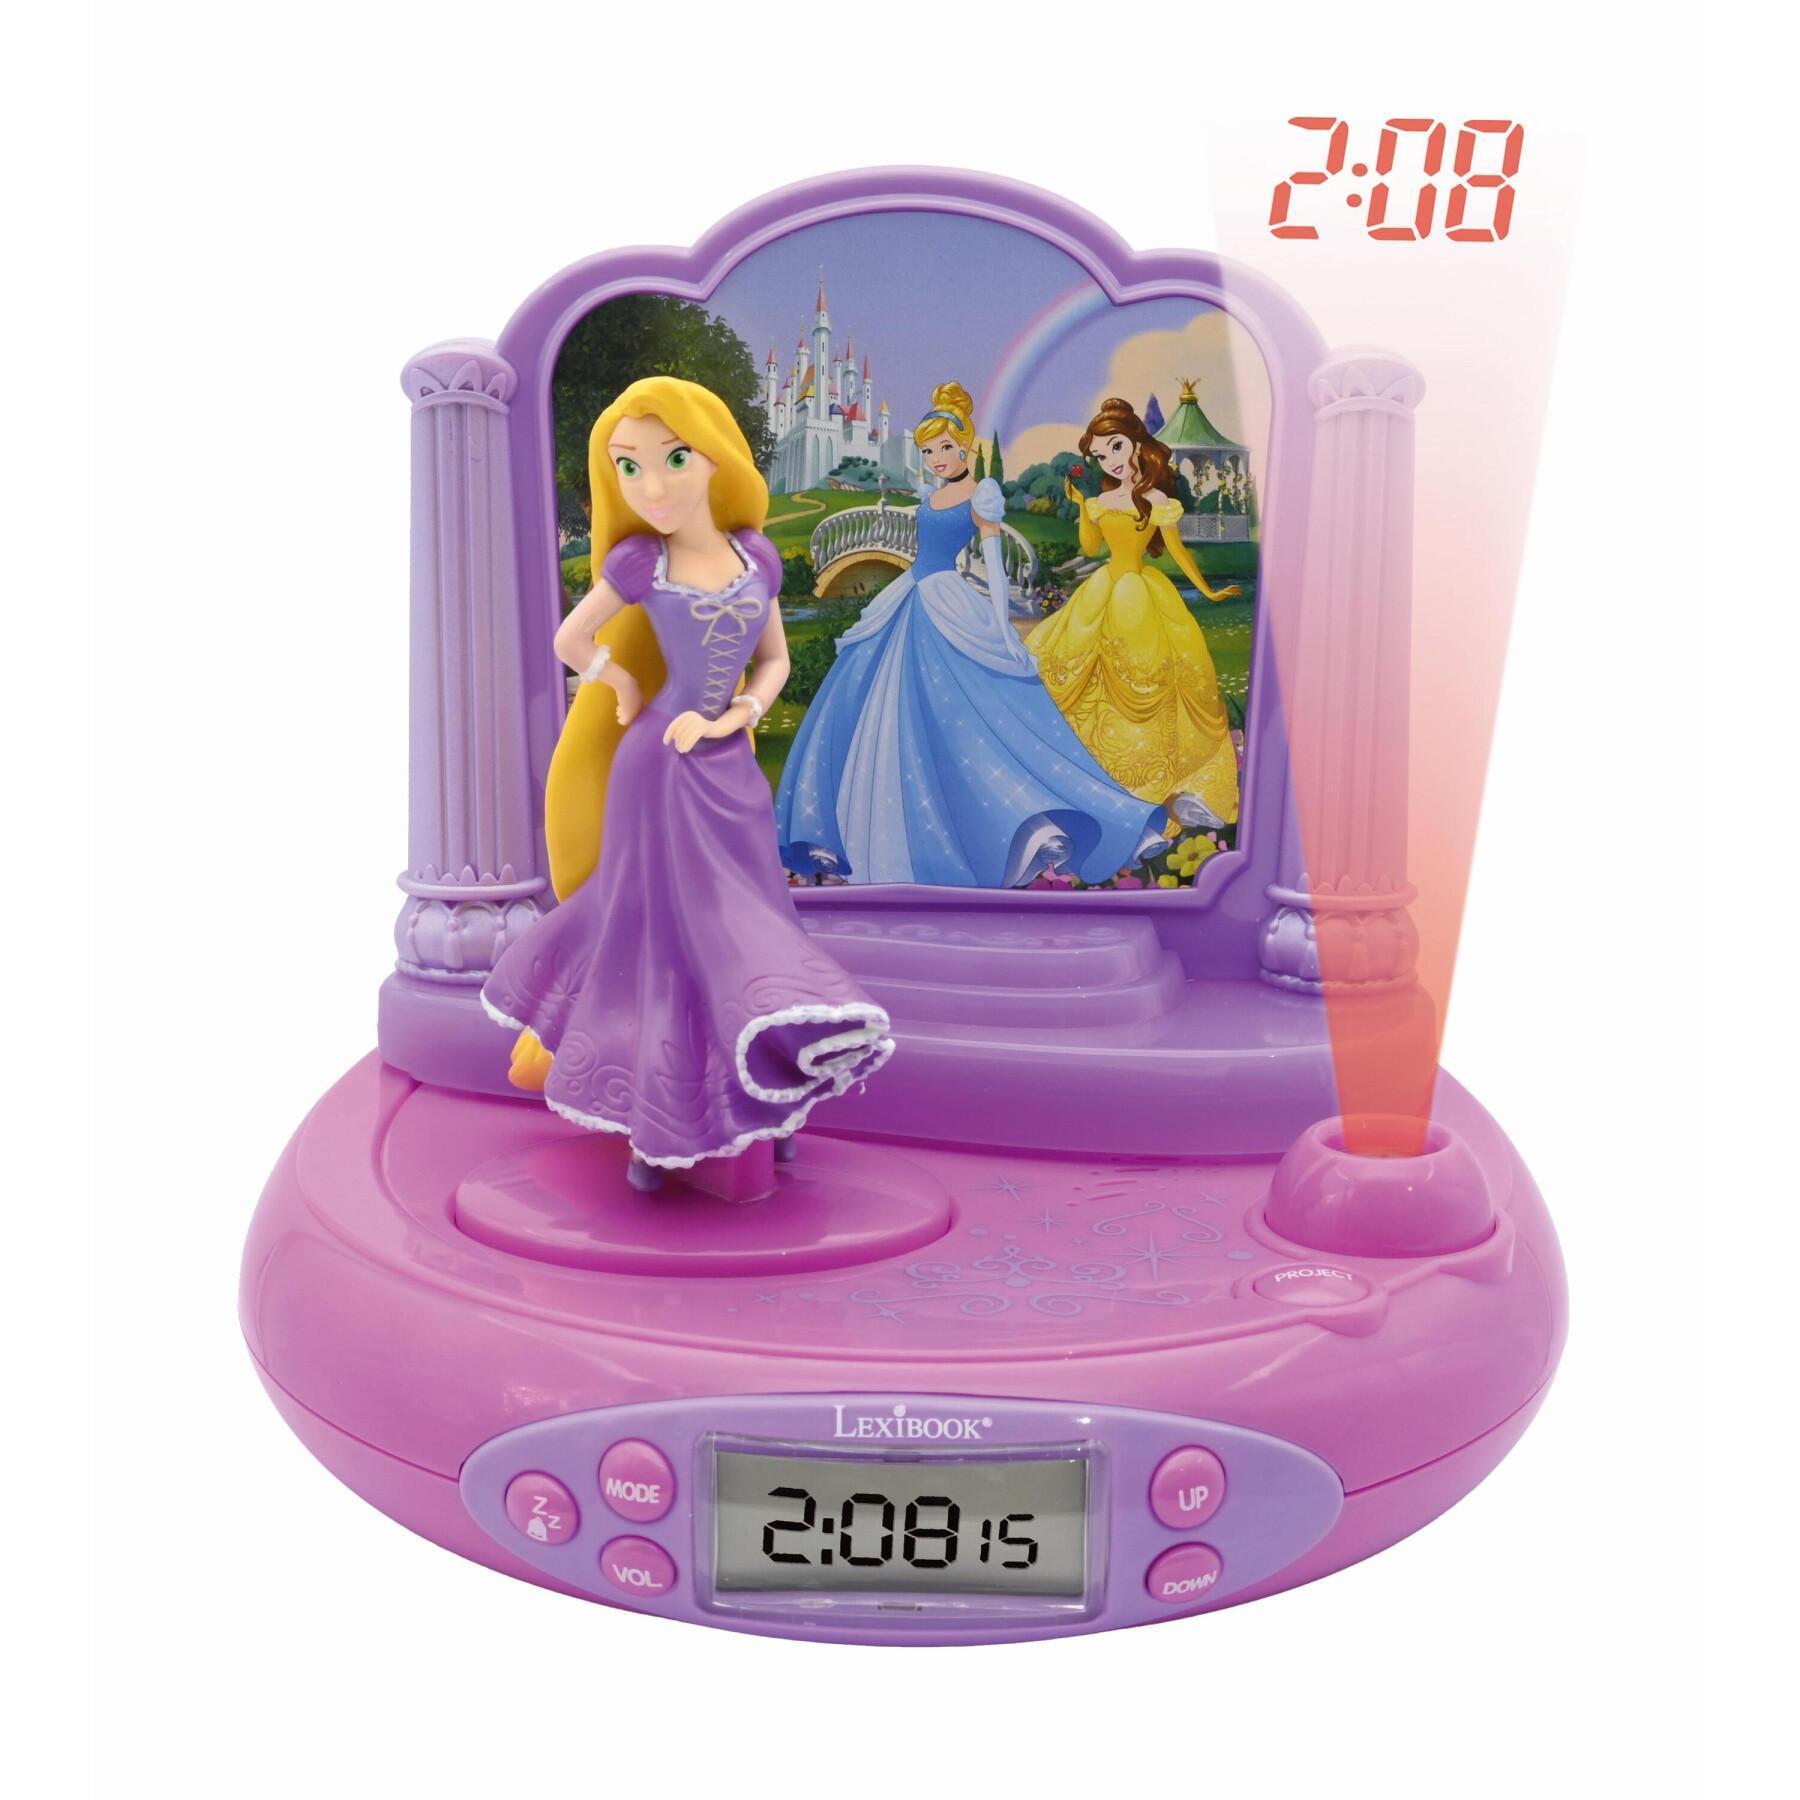 Réveil projecteur Disney Princesses fonction minuteur